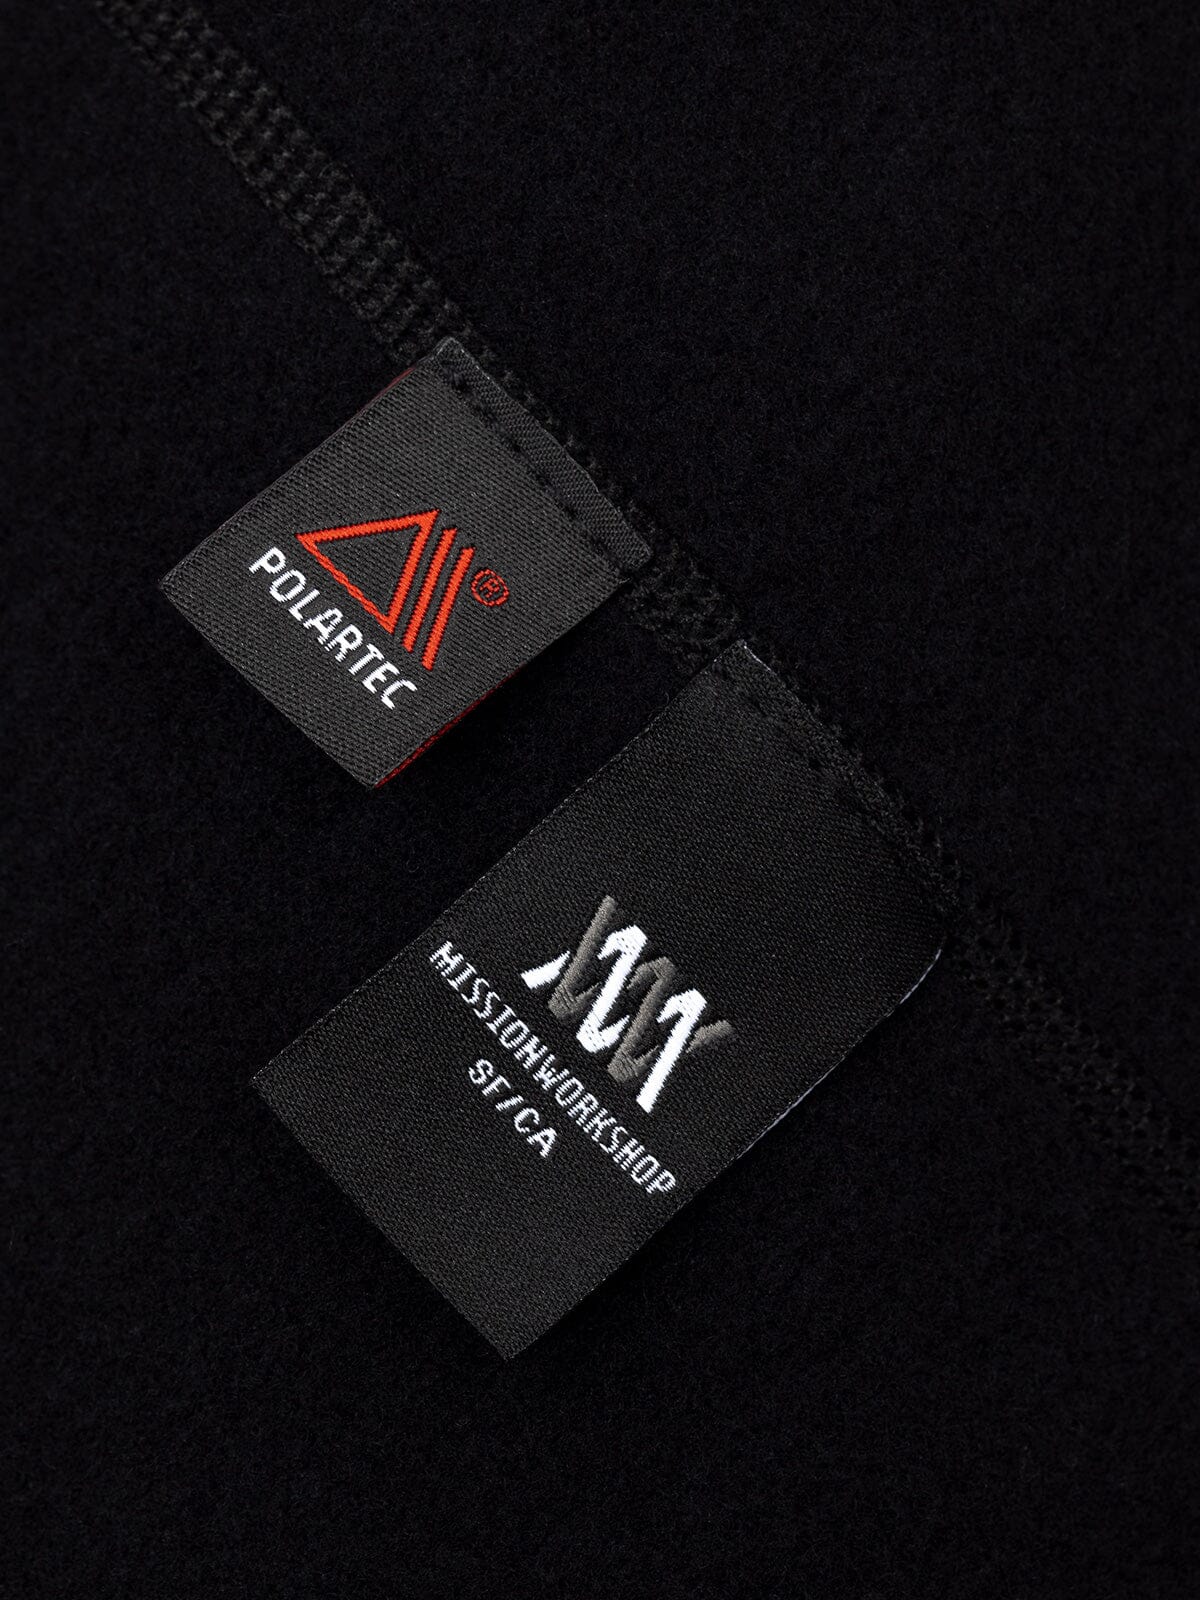 Mason : Power Wool by Mission Workshop - Weatherproof Bags & Technical Apparel - San Francisco & Los Angeles - Construit pour durer - Garanti pour toujours